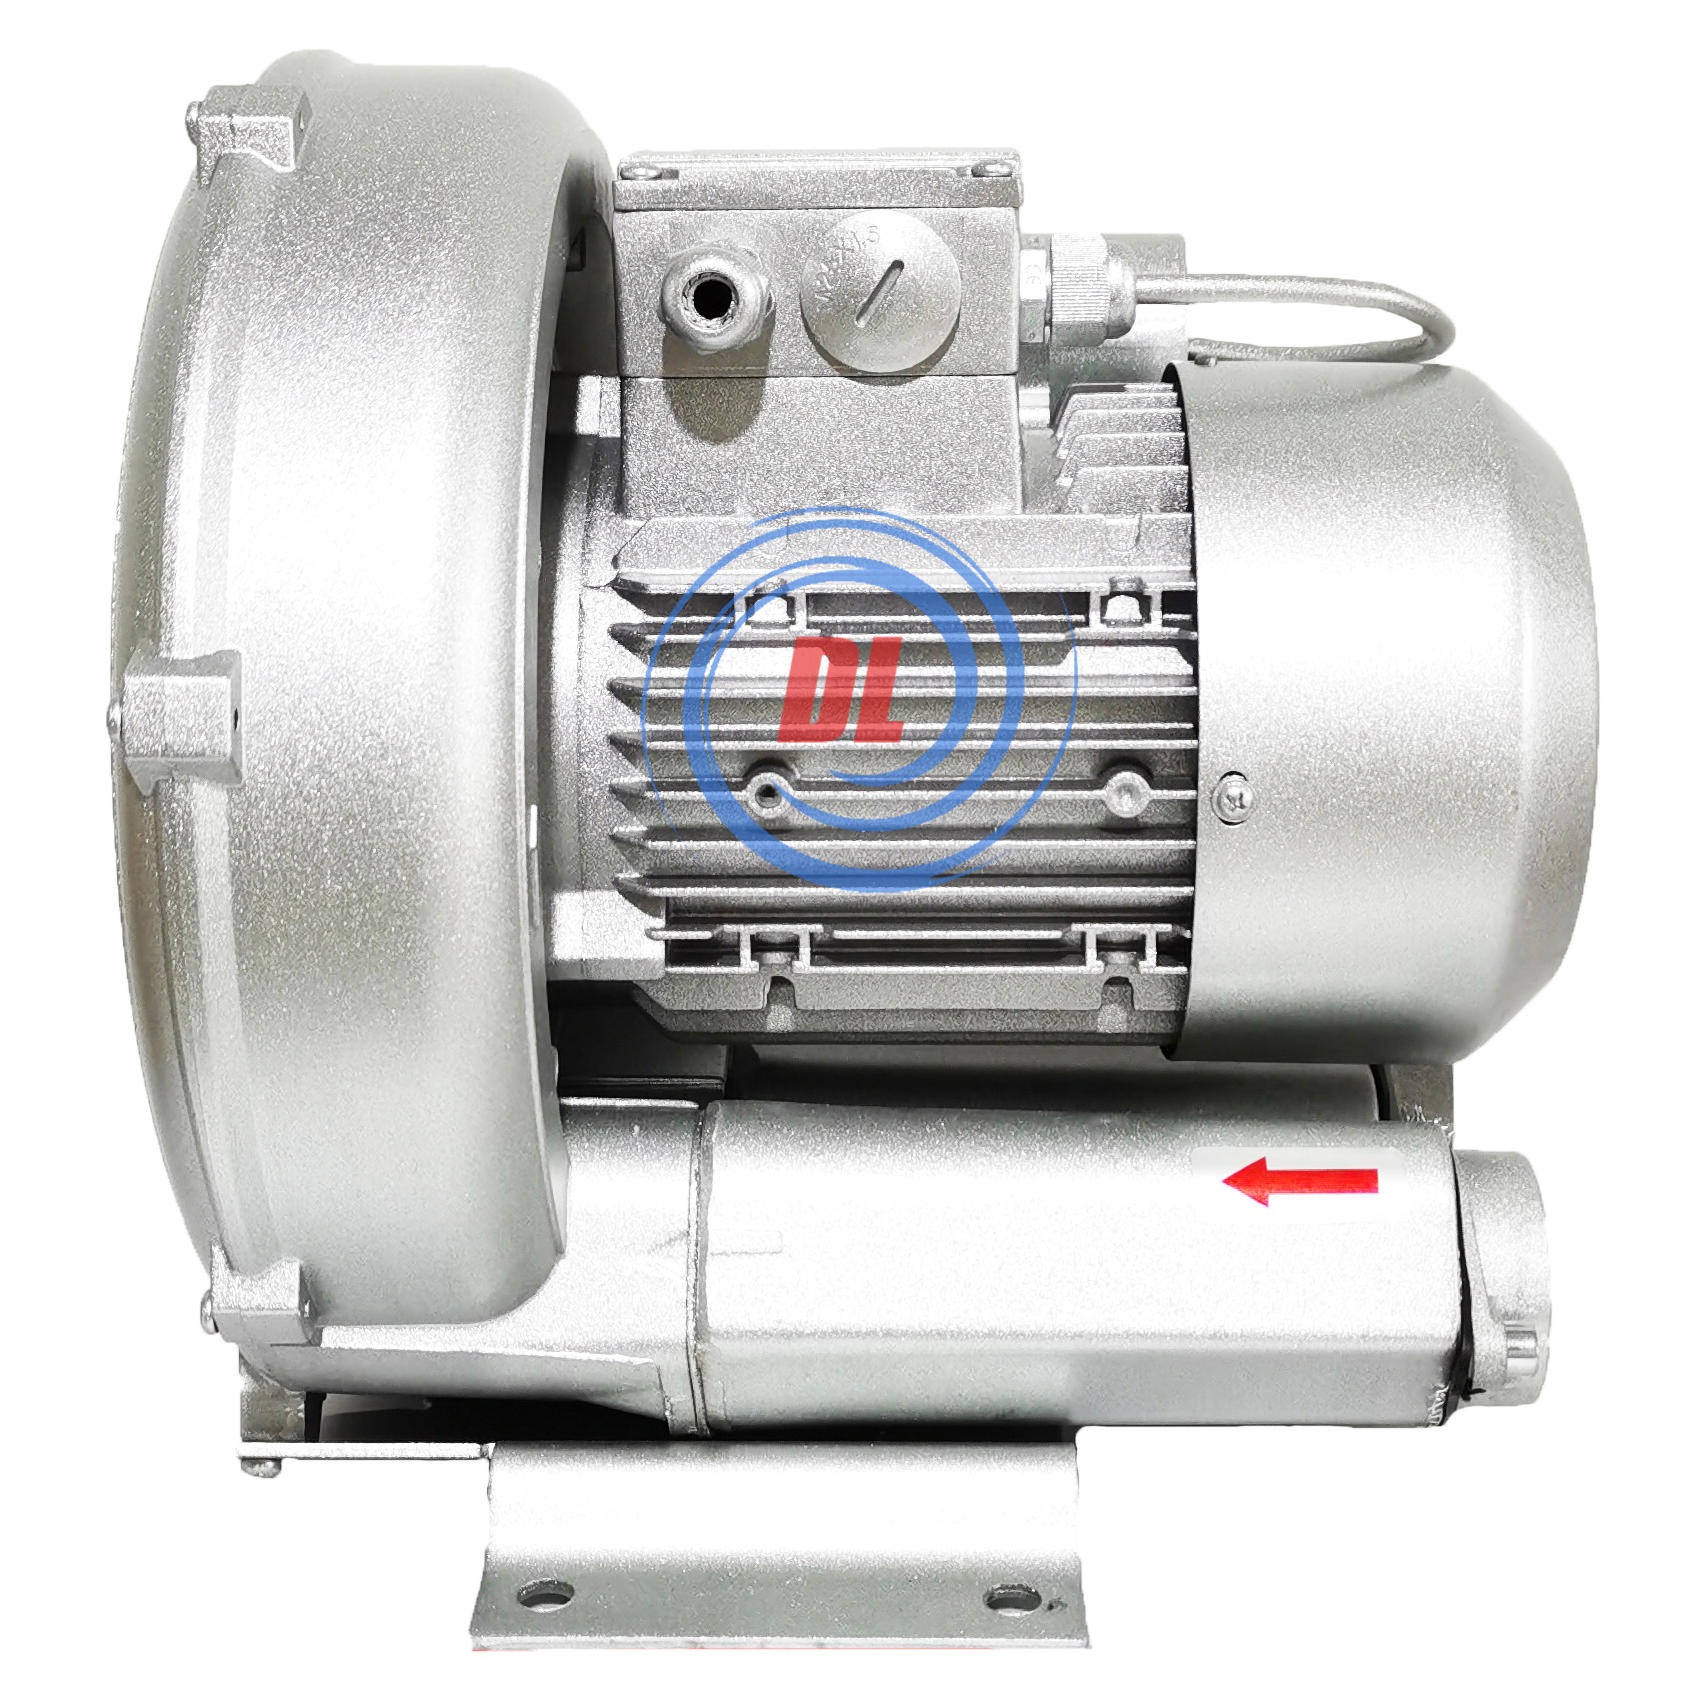 高速胶带分条机专用单相220V0.75kw旋涡气泵